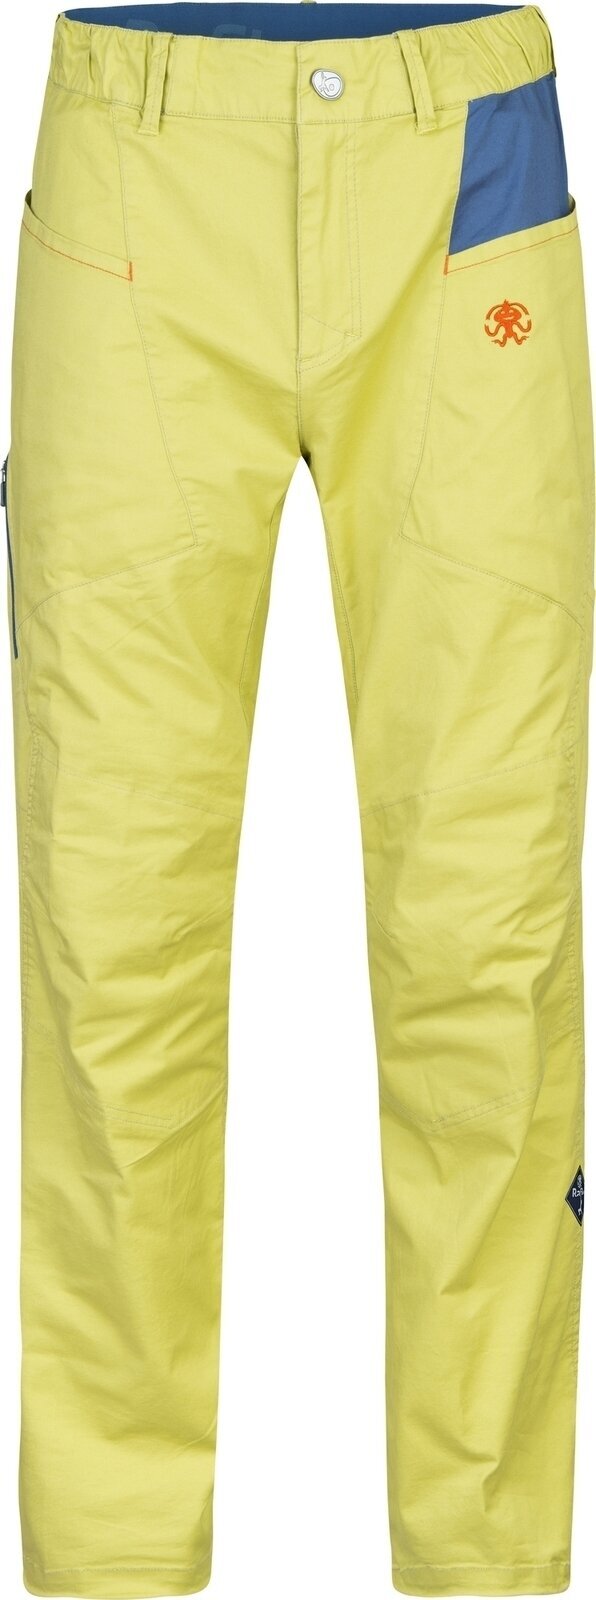 Pantalones para exteriores Rafiki Crag Man Pants Cress Green/Ensign L Pantalones para exteriores